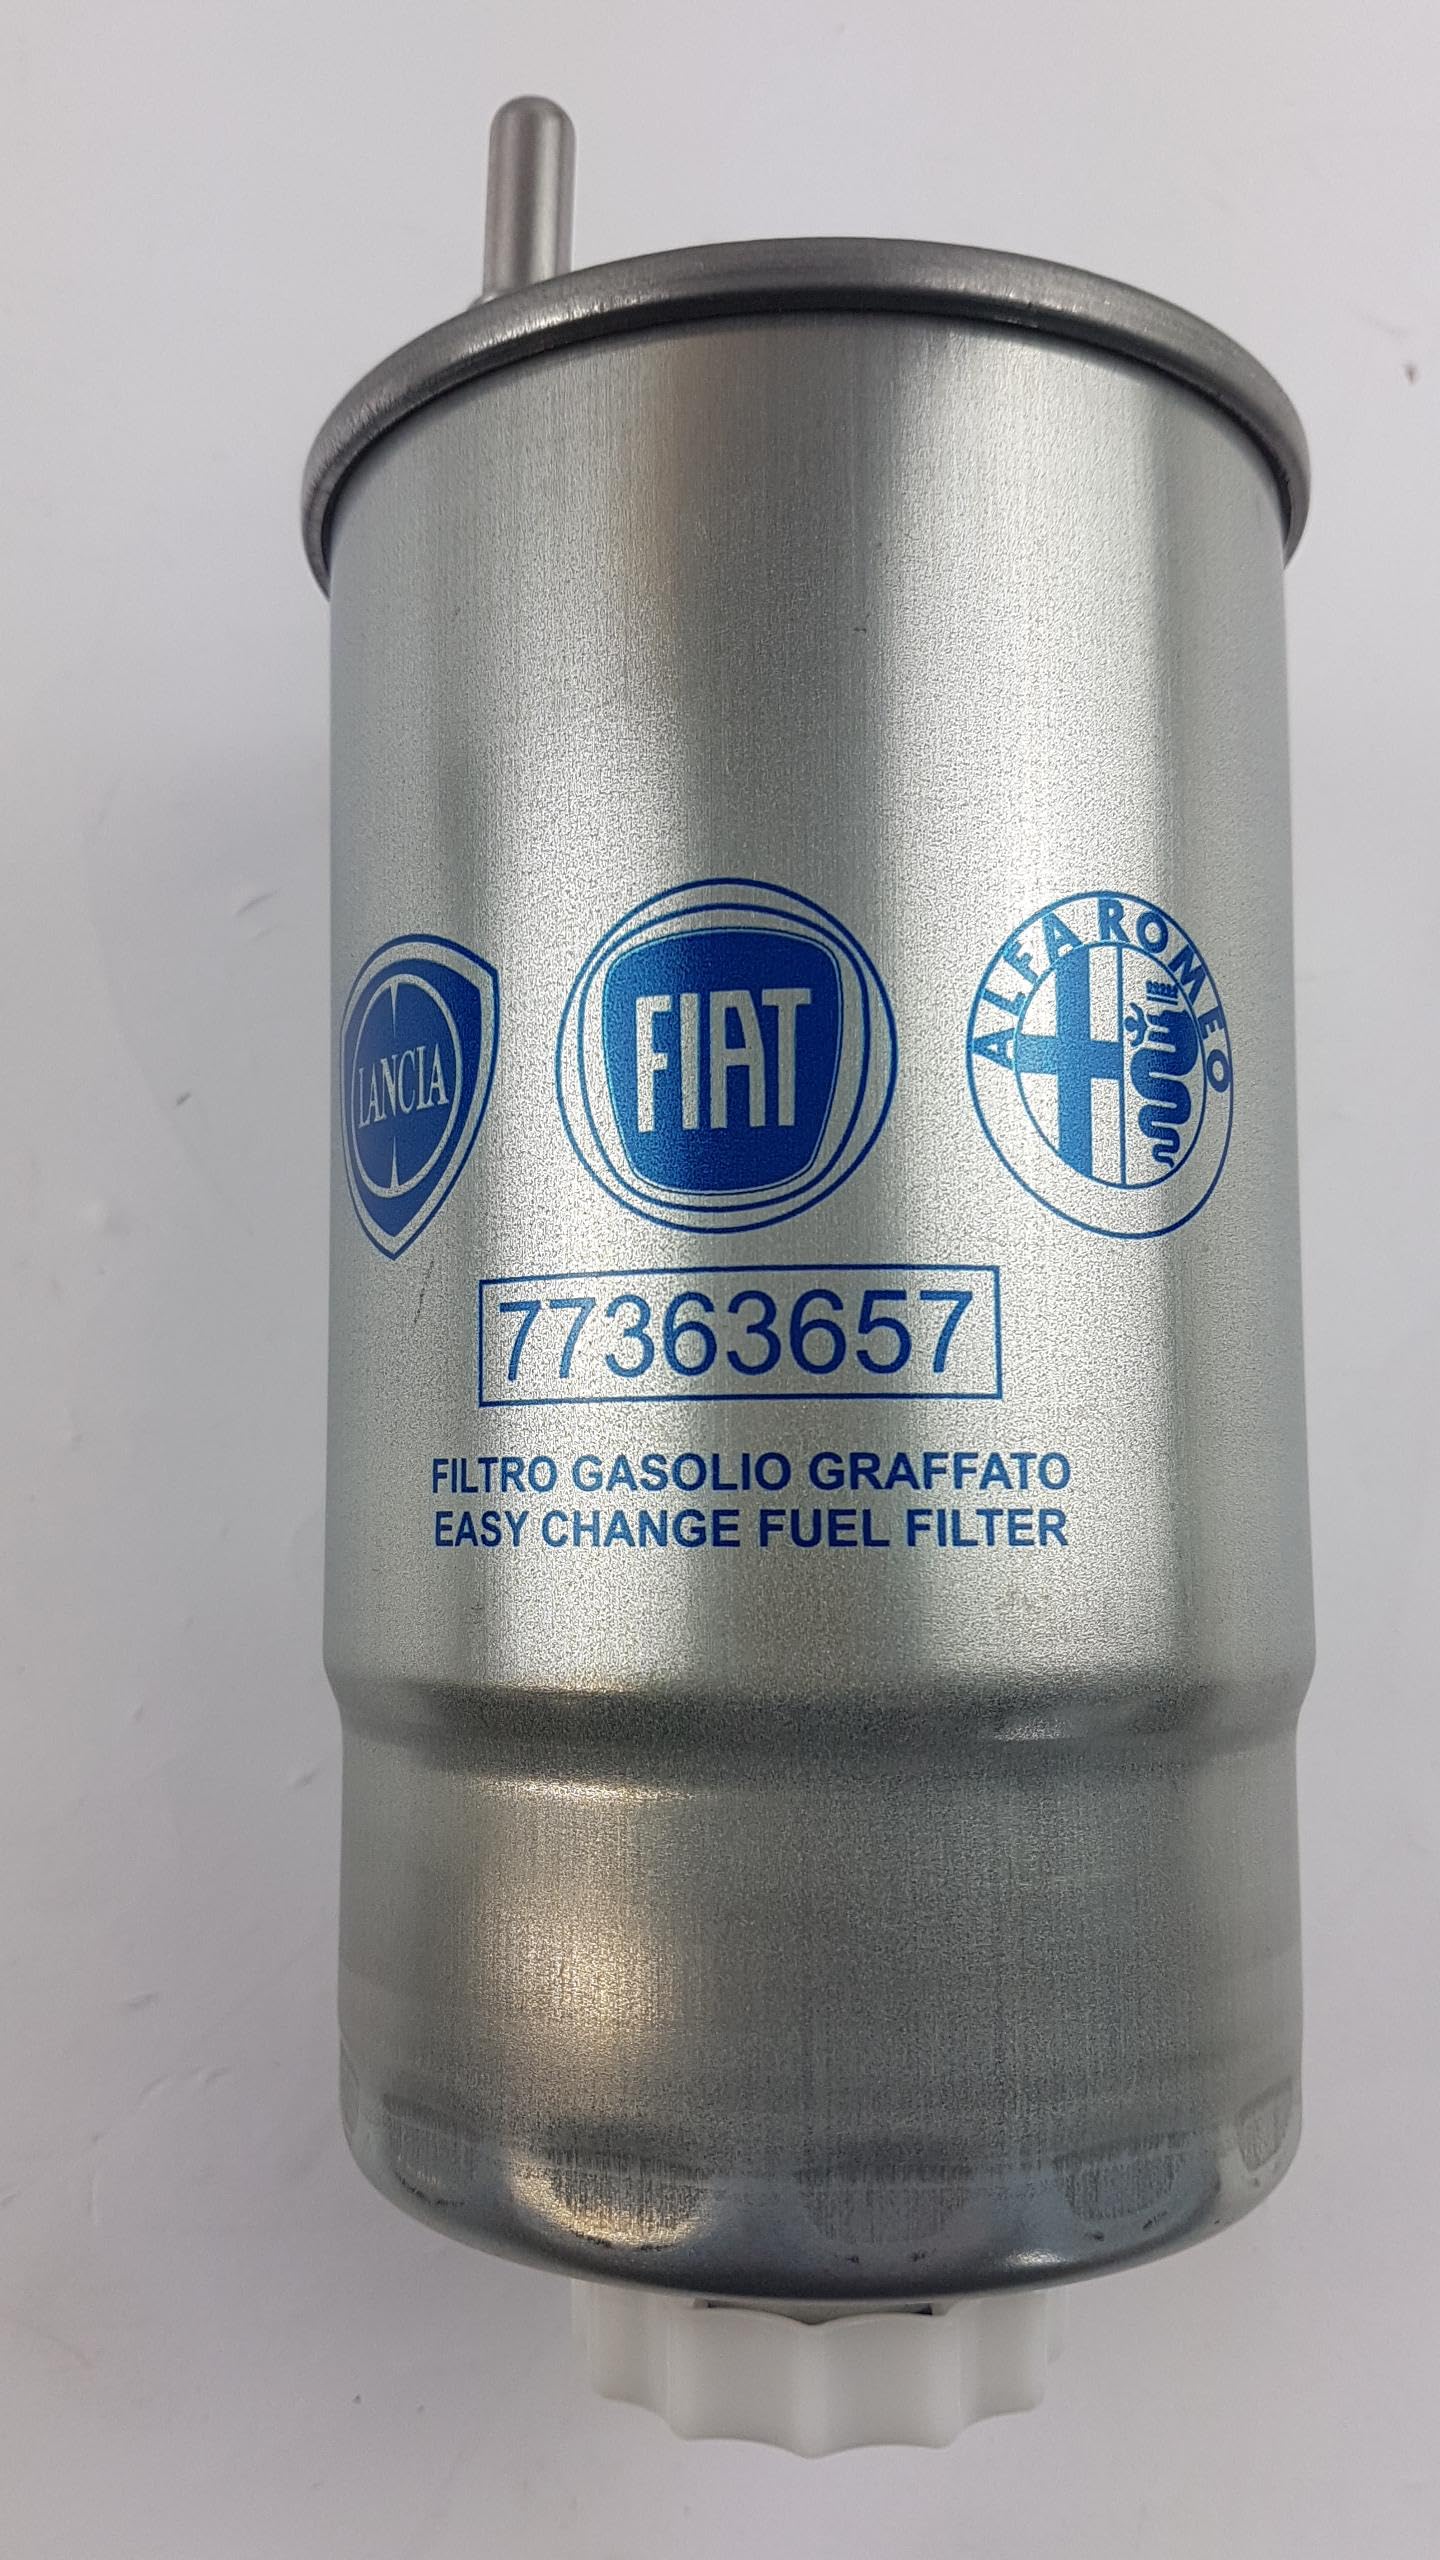 Original Fiat Bravo 1,6D 1,9D 2,0D Multijet Dieselfilter Kraftstofffilter - 77363657 von Fiat